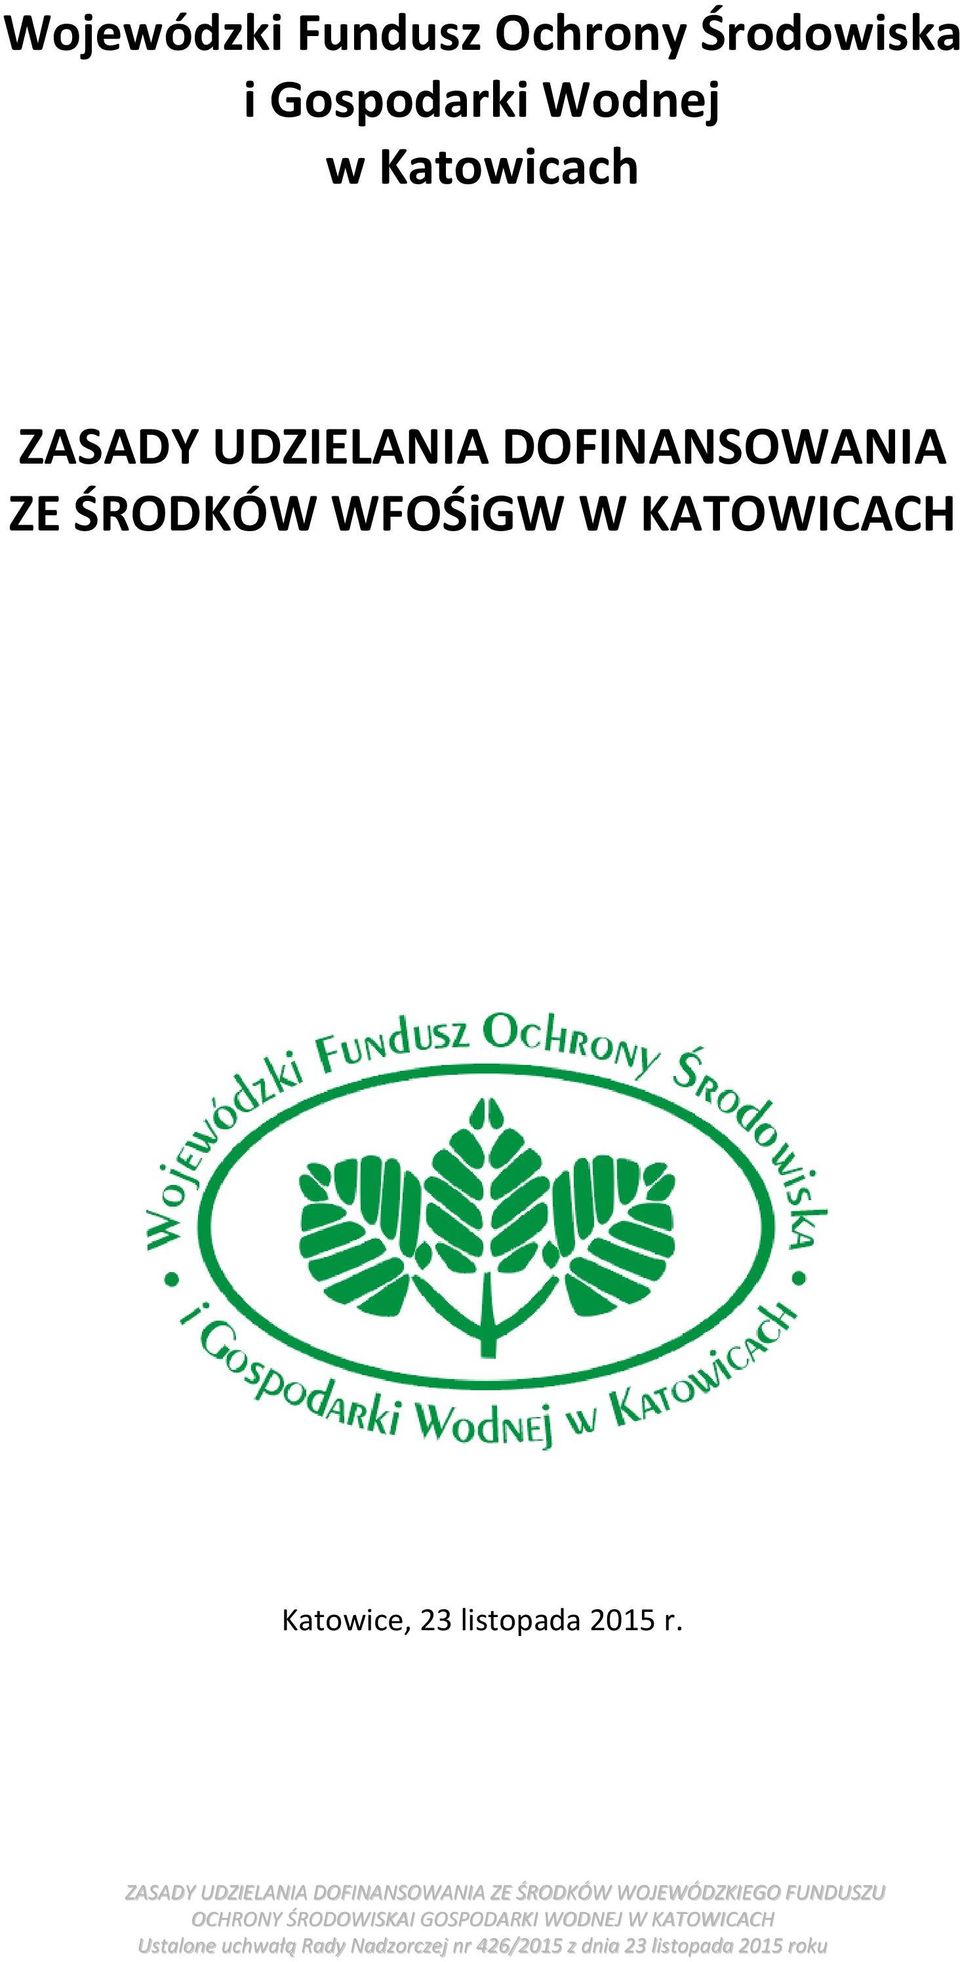 WFOŚiGW W KATOWICACH Katowice, 23 listopada 2015 r.